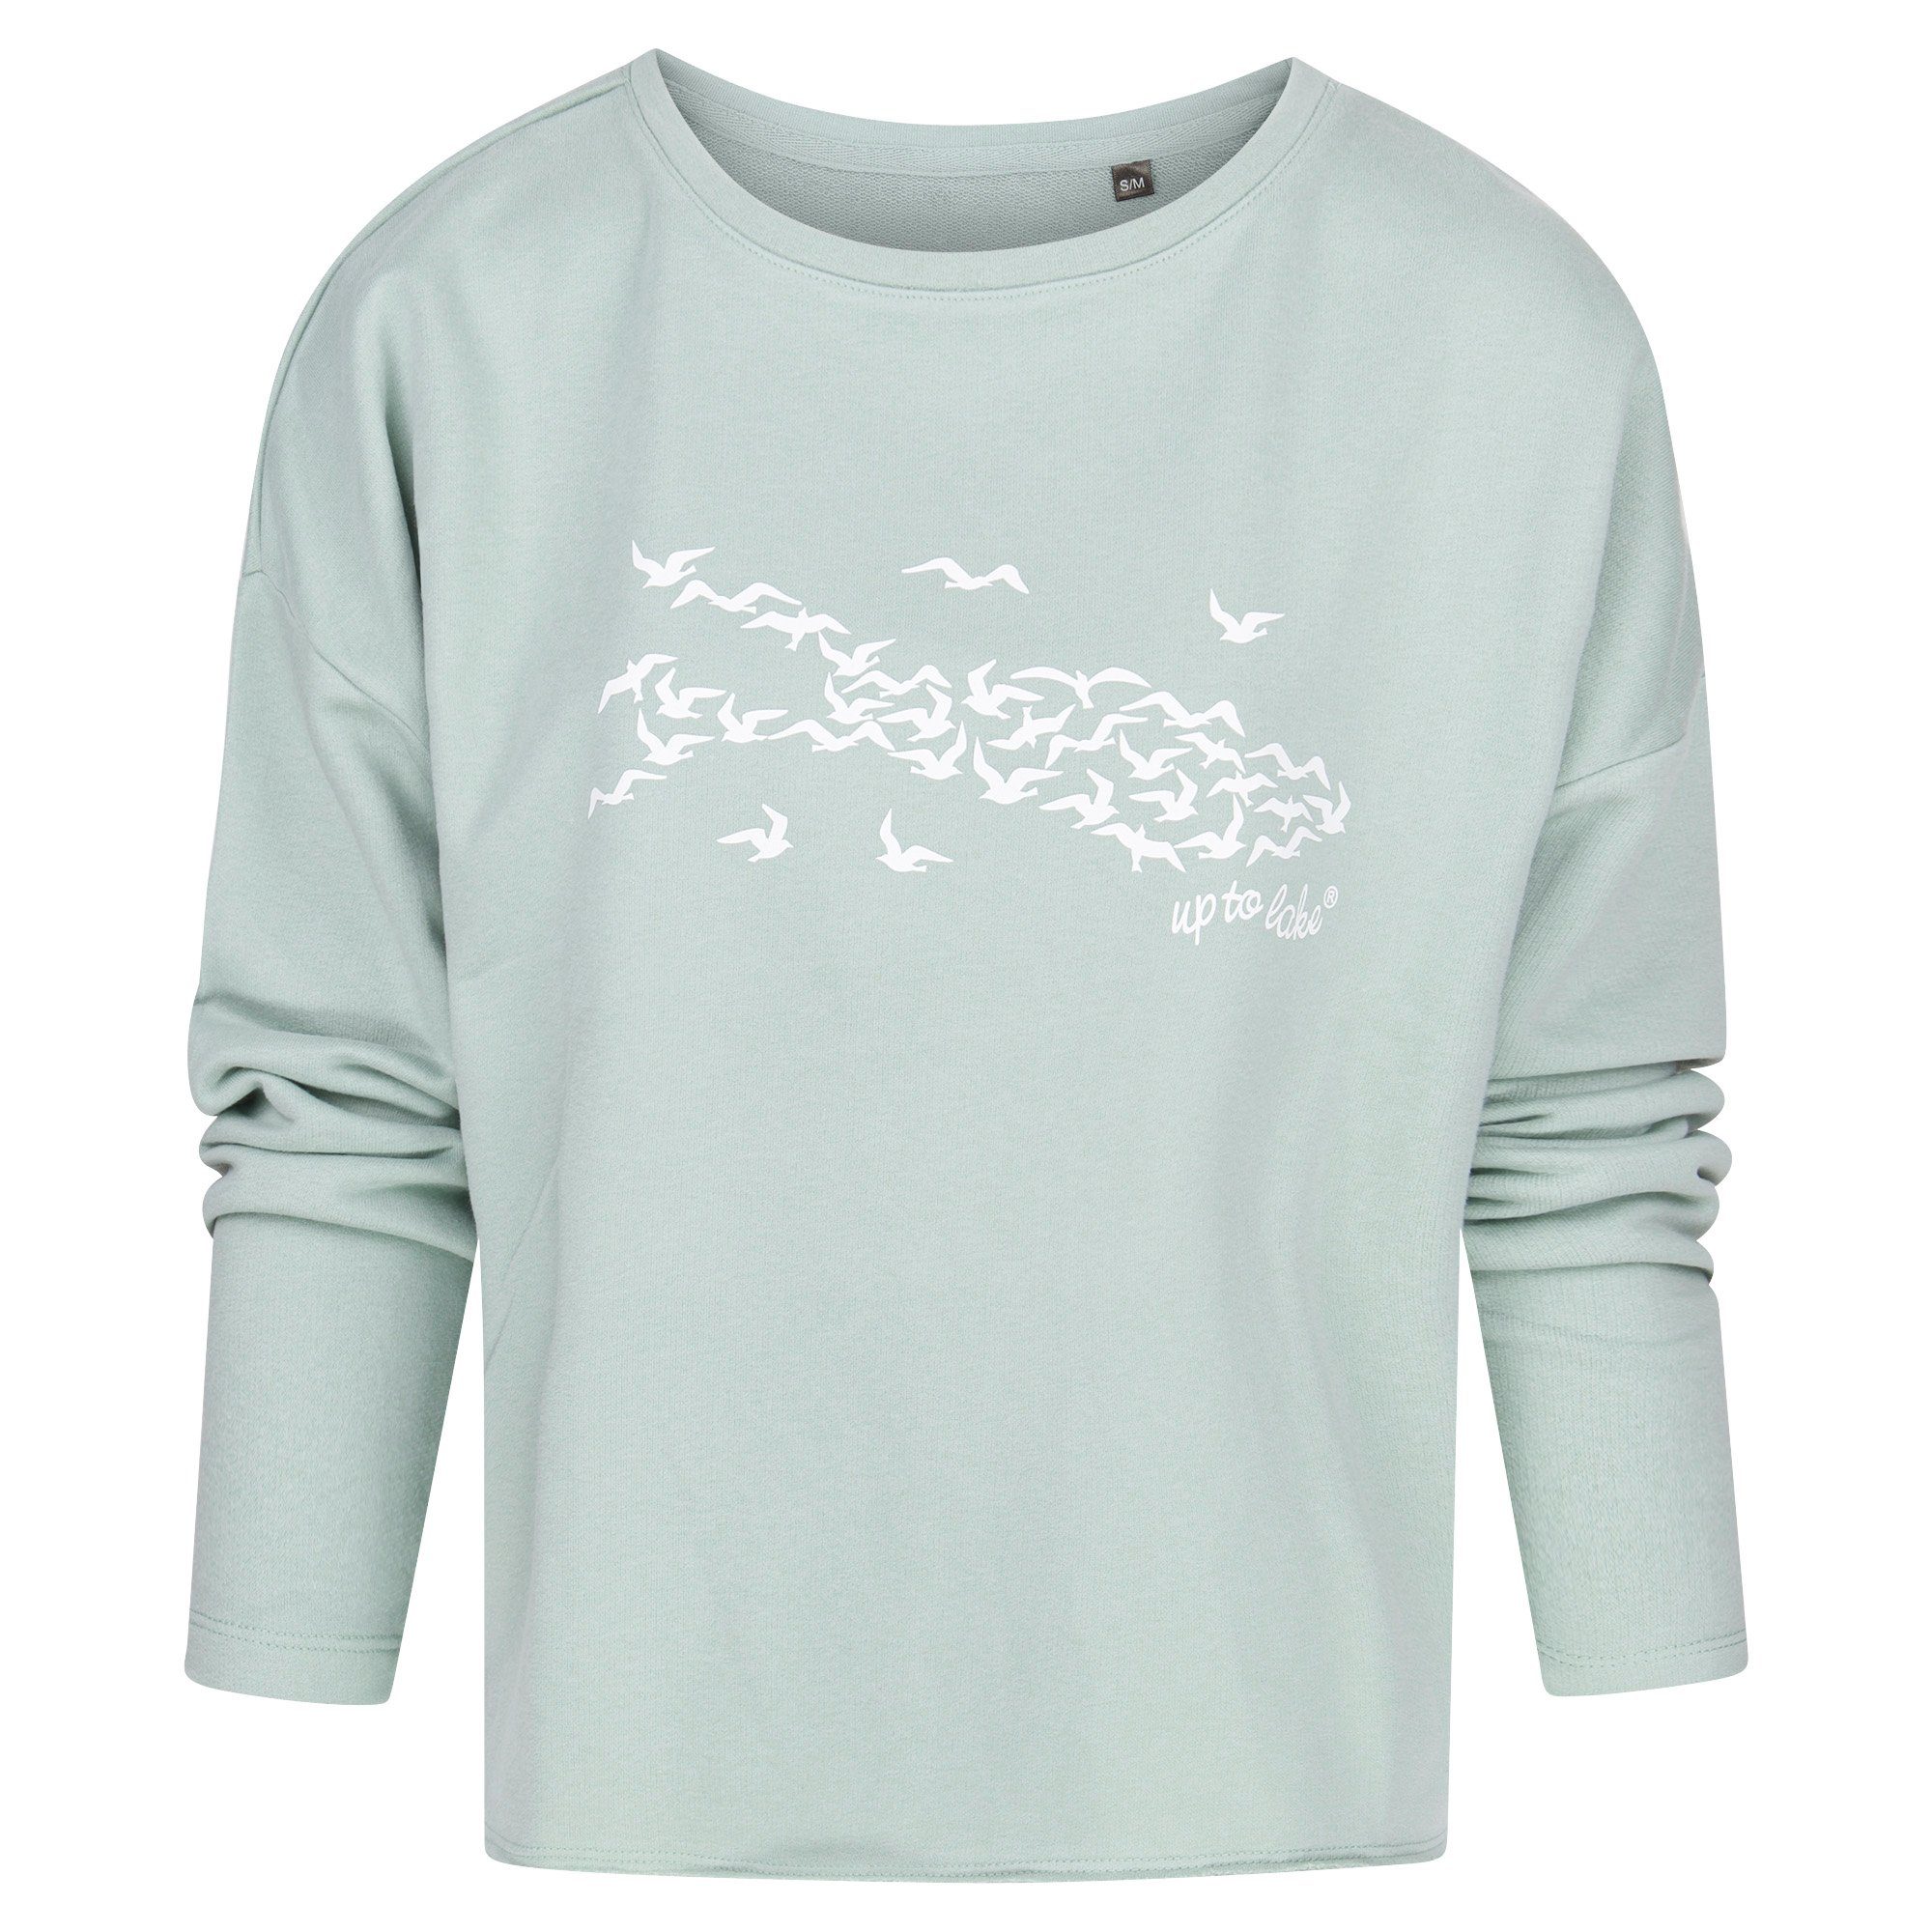 Sage/Weiß Sweatshirt Baumwollstoff weichem mit uptolake für Damen "Mövensee-Bodensee" Design design aus